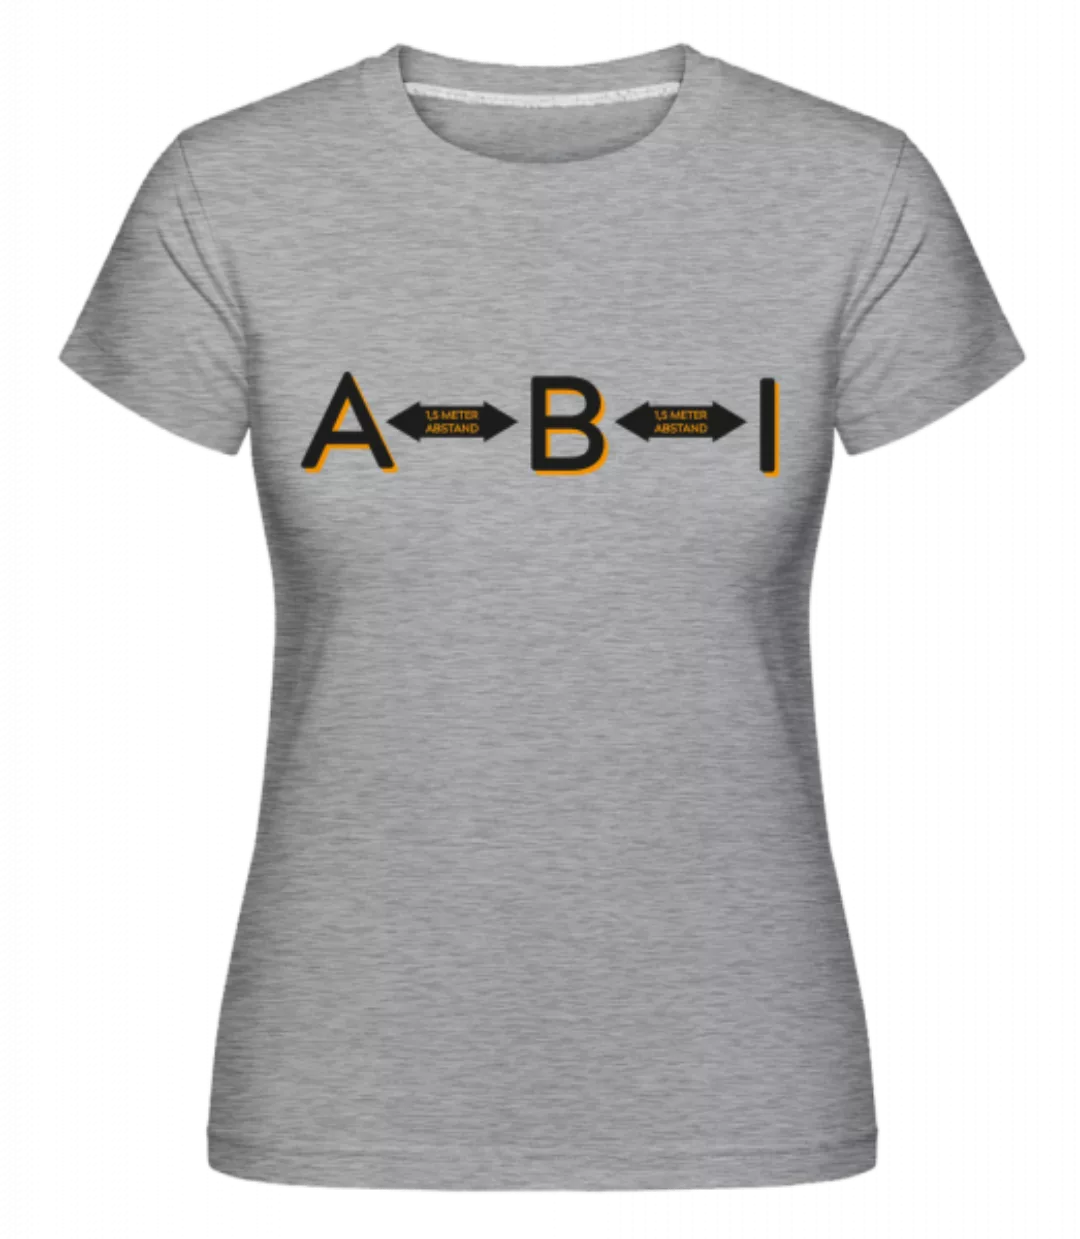 ABI 15 Meter Abstand · Shirtinator Frauen T-Shirt günstig online kaufen